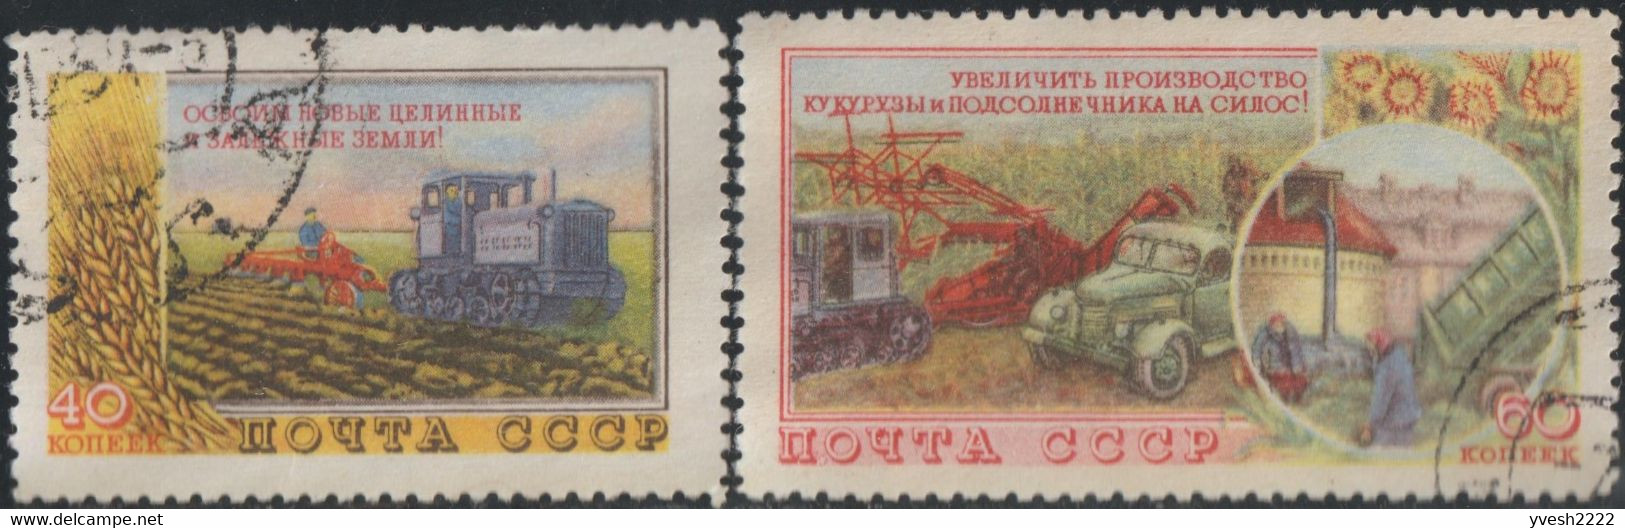 URSS 1954 Y&T 1724 à 1727, Michel 1741 à 1744. Progrès Dans L'agriculture. Potager, Traitement De Champ, Lin, Maïs - Agriculture